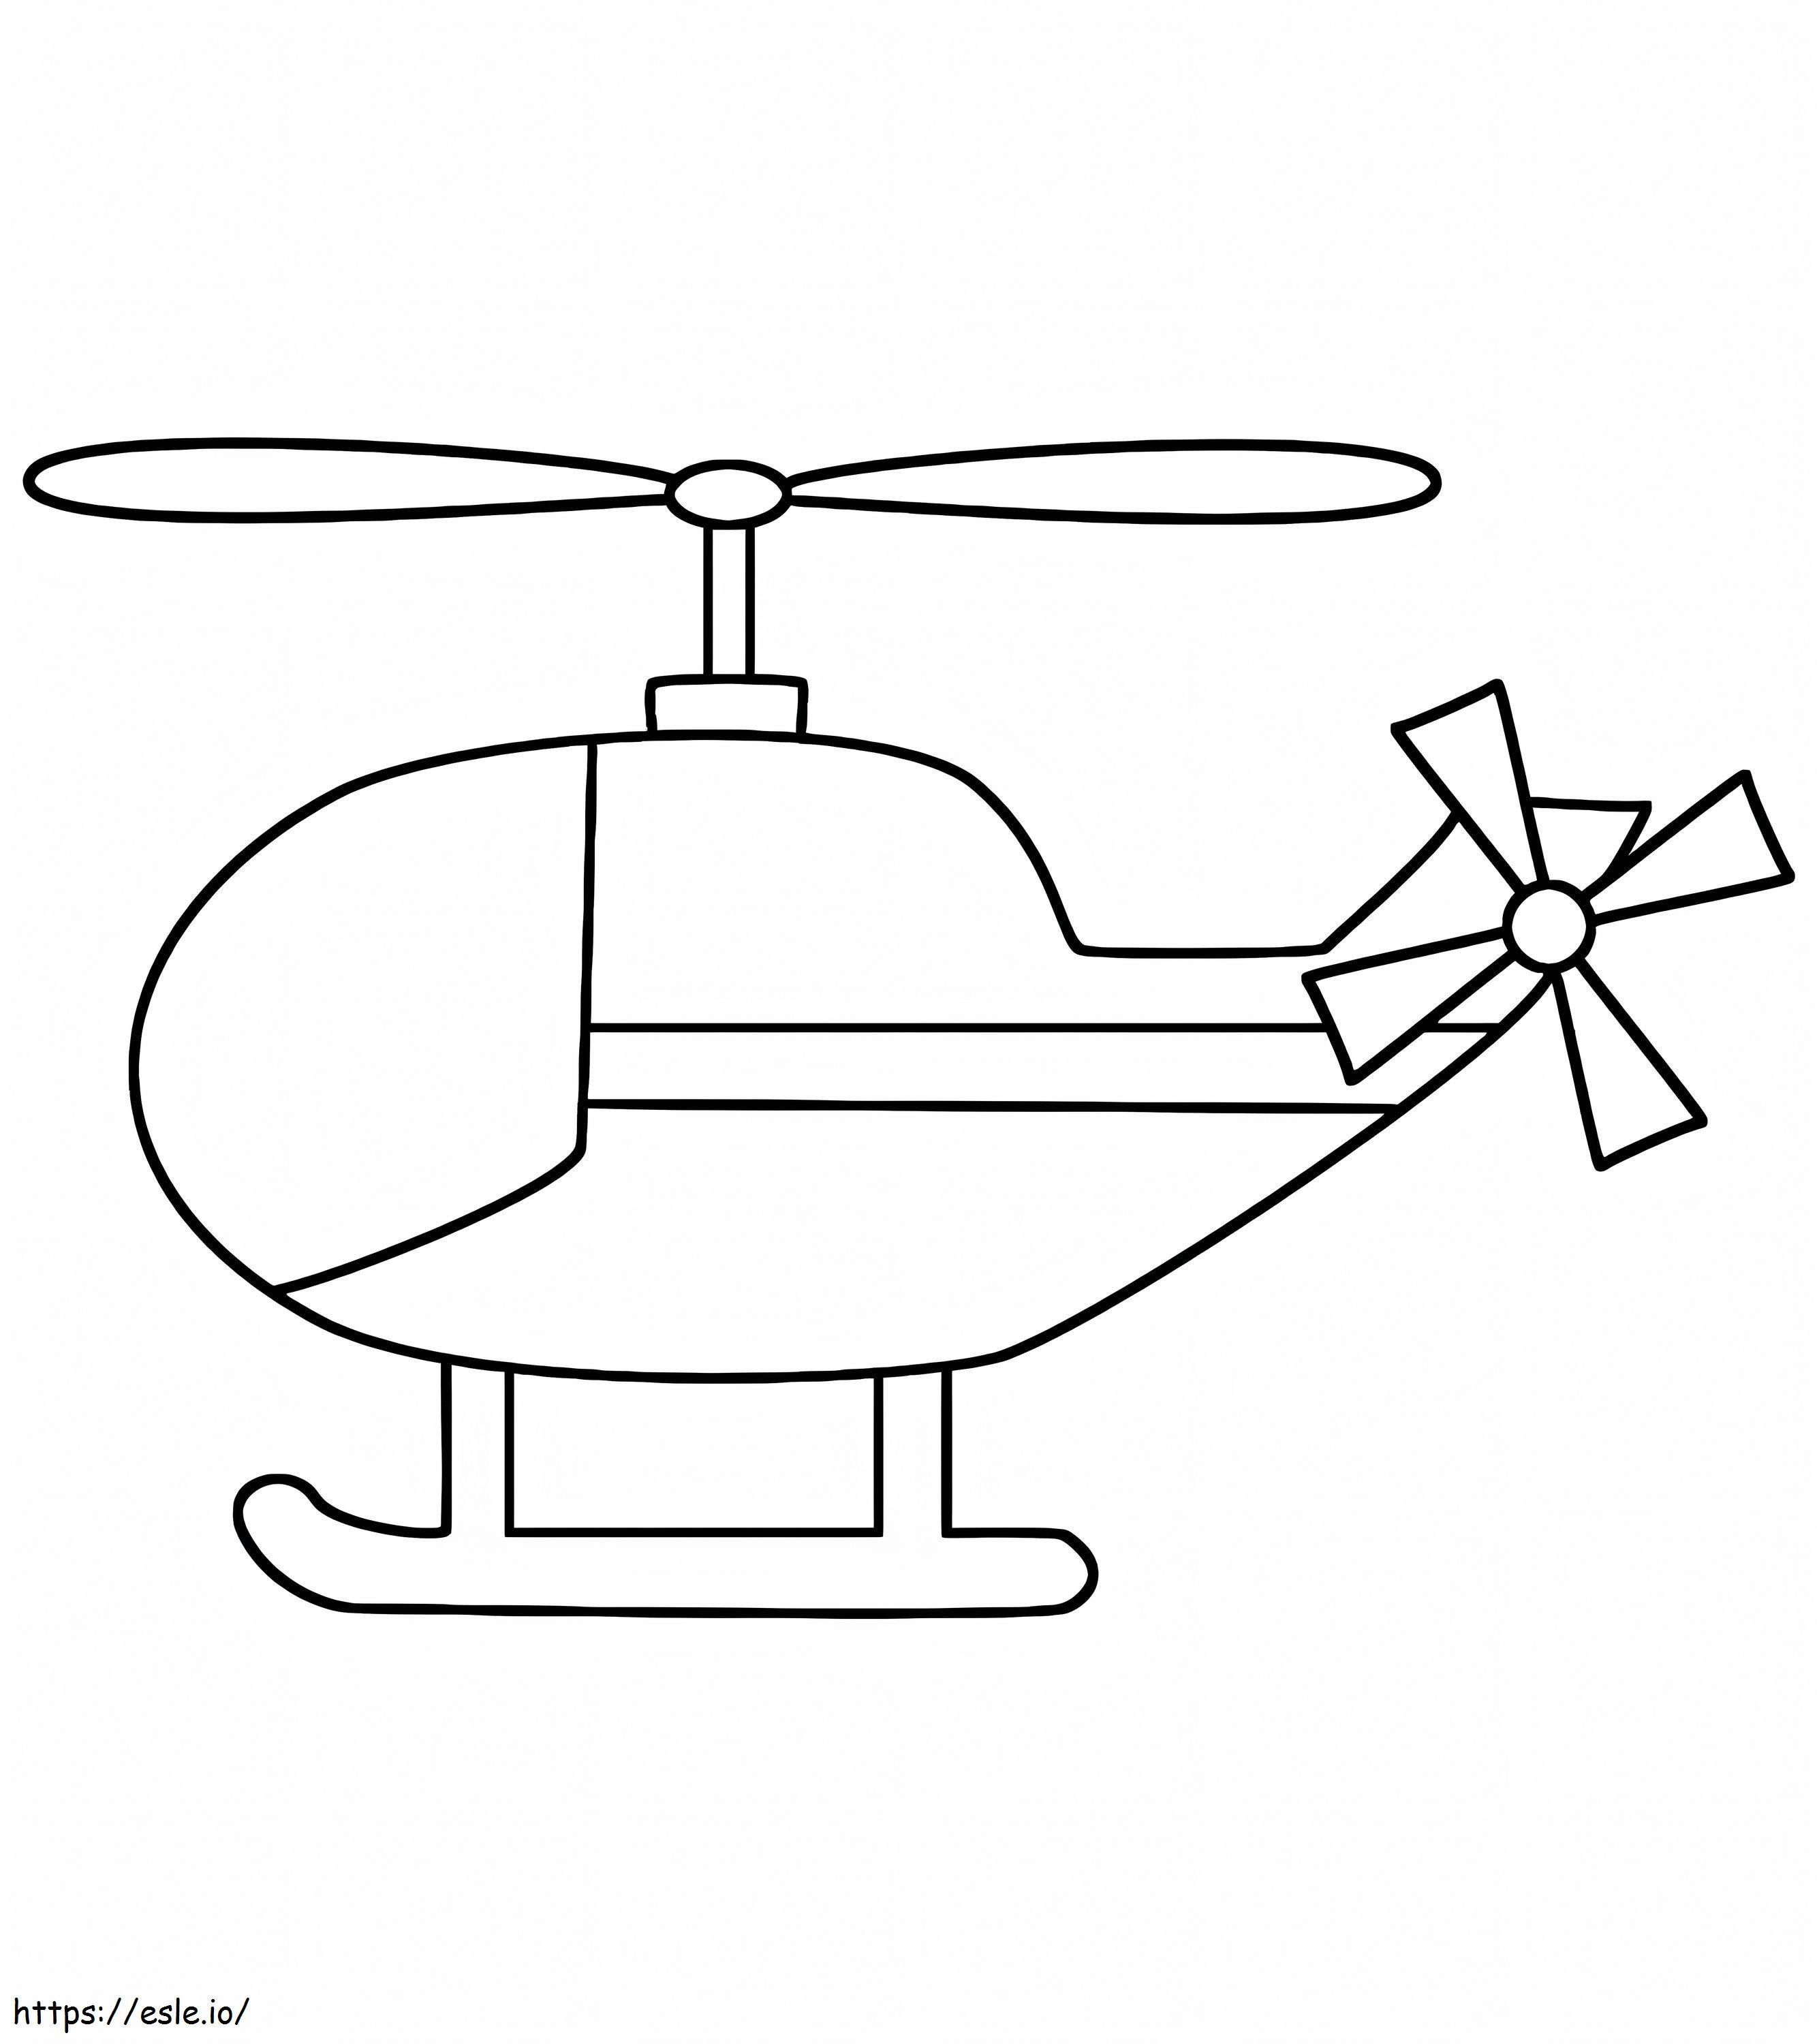 Helikopter kleurplaten voor uw kleintjes kleurplaat kleurplaat